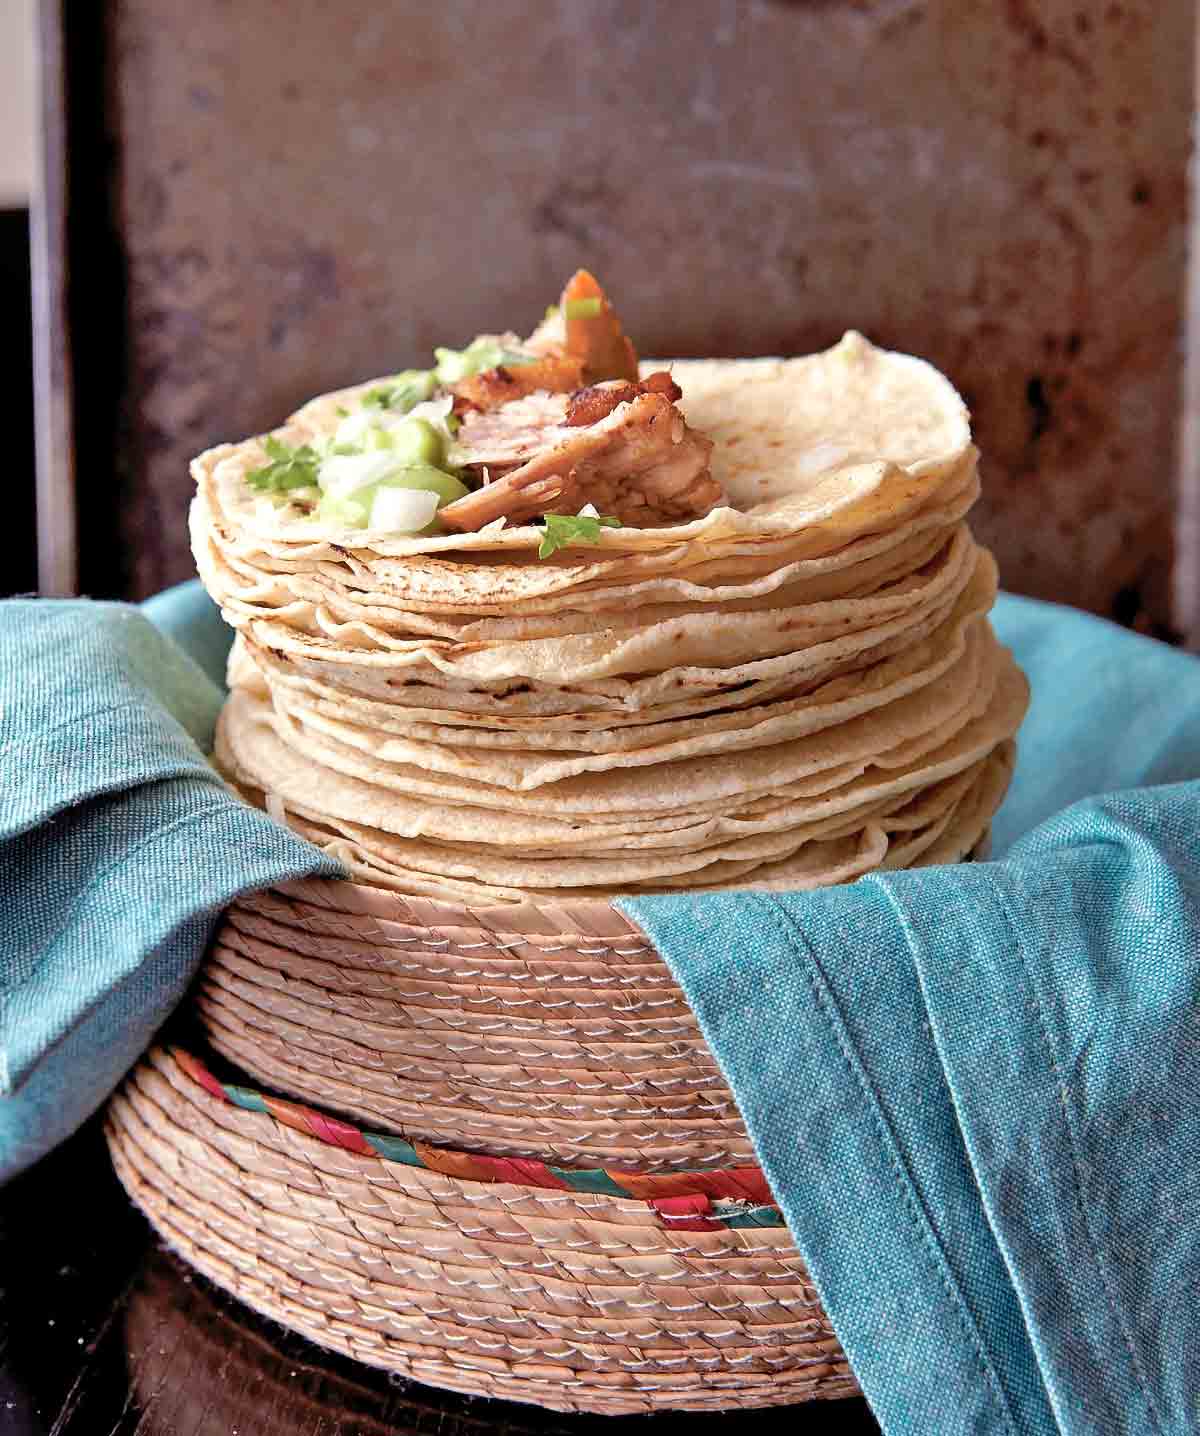 Ein Haufen weicher Tortillas mit Carnitas, Zwiebeln, Guacamole und Koriander.  Sie ruhen in einem geflochtenen Korb auf einem Stapel blauer Servietten.